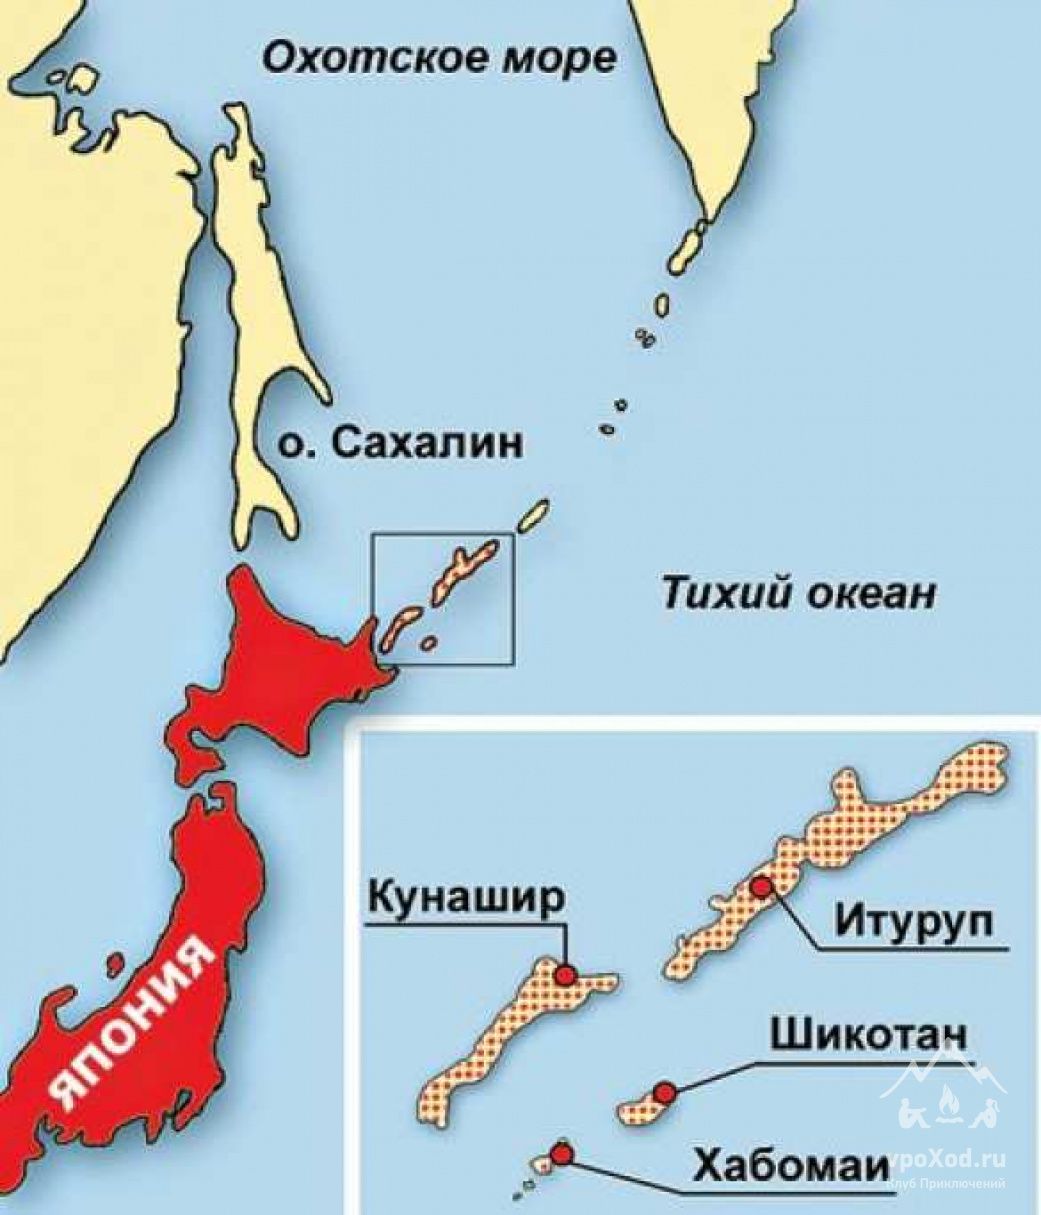 Карта острова Кунашир Итуруп Шикотан и Хабомаи на карте